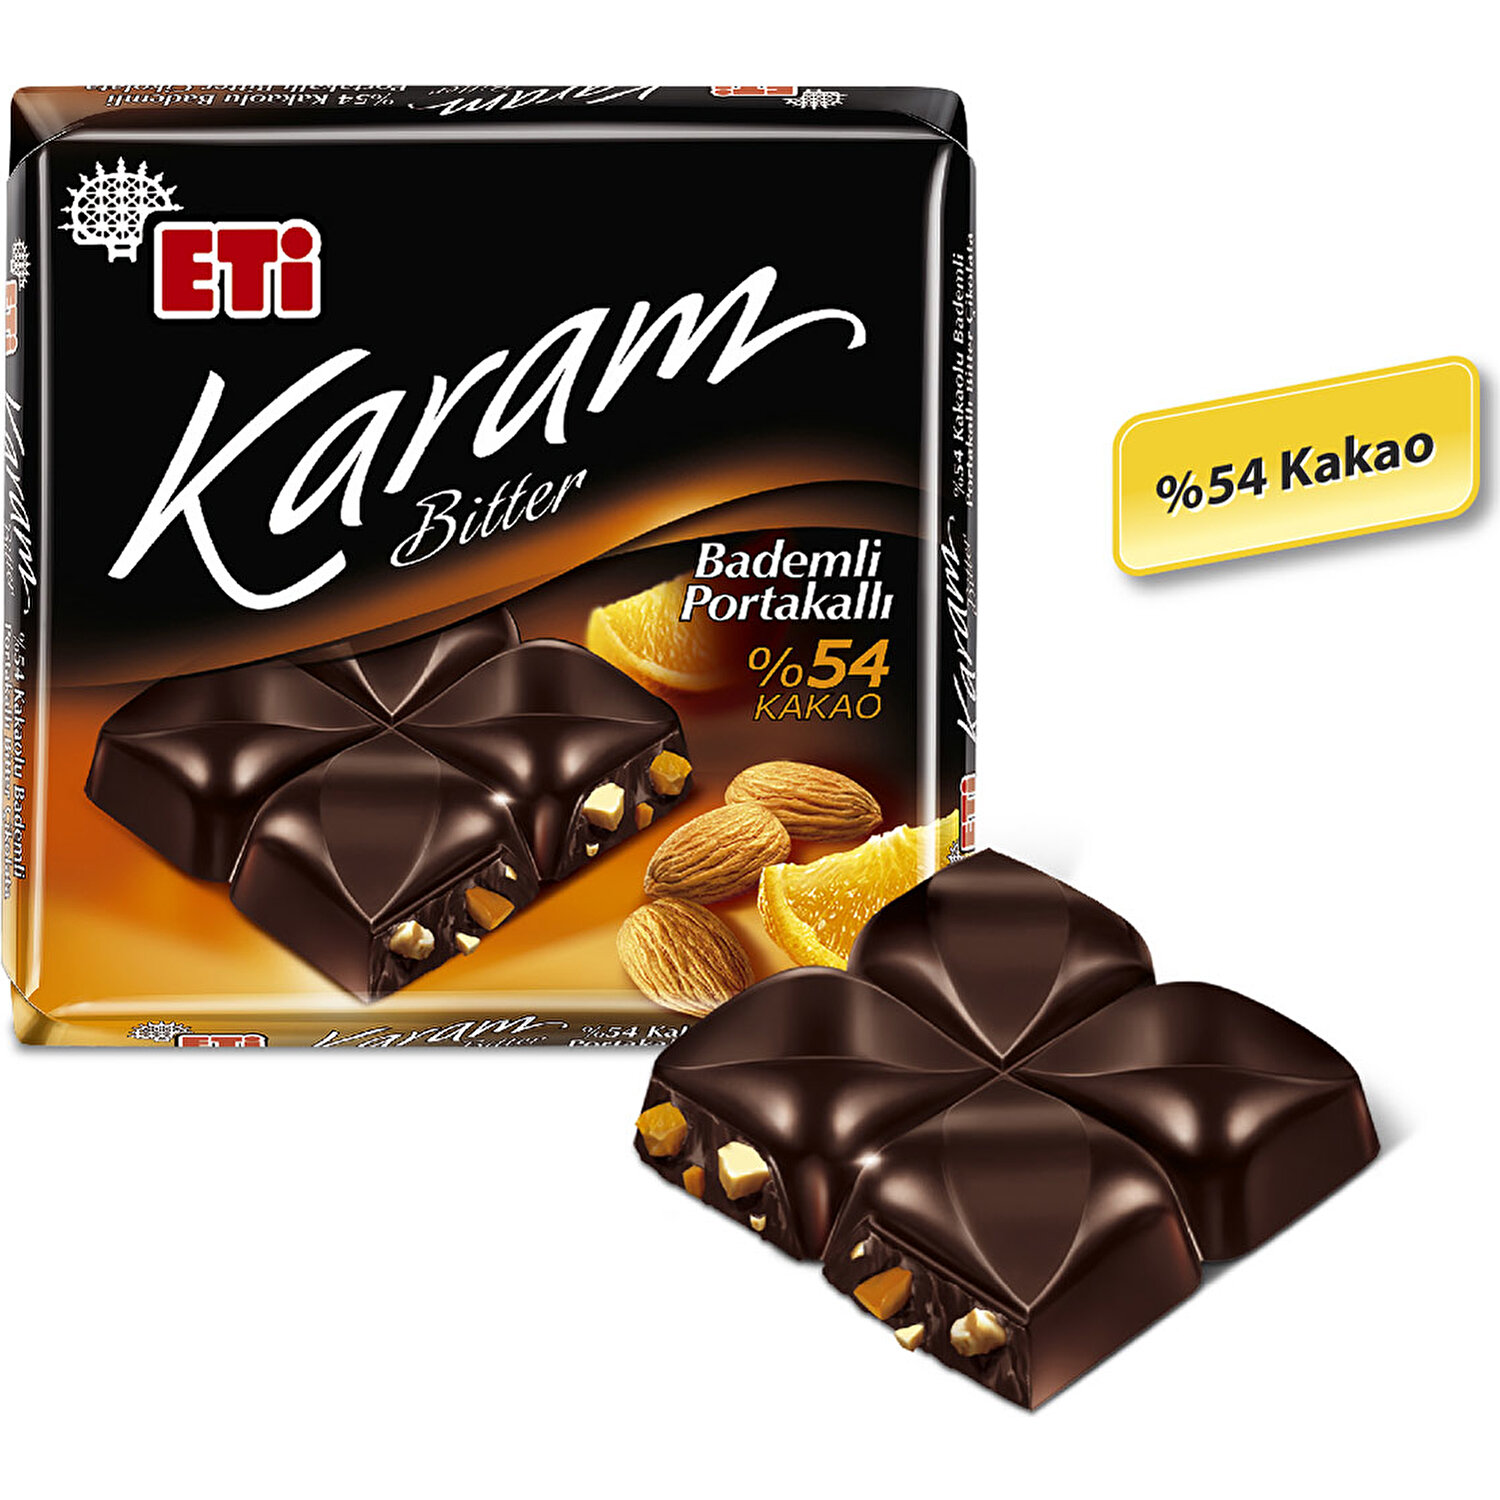 Eti Karam Bademli Portakallı Kakaolu Bitter Çikolata 60 g x Fiyatı